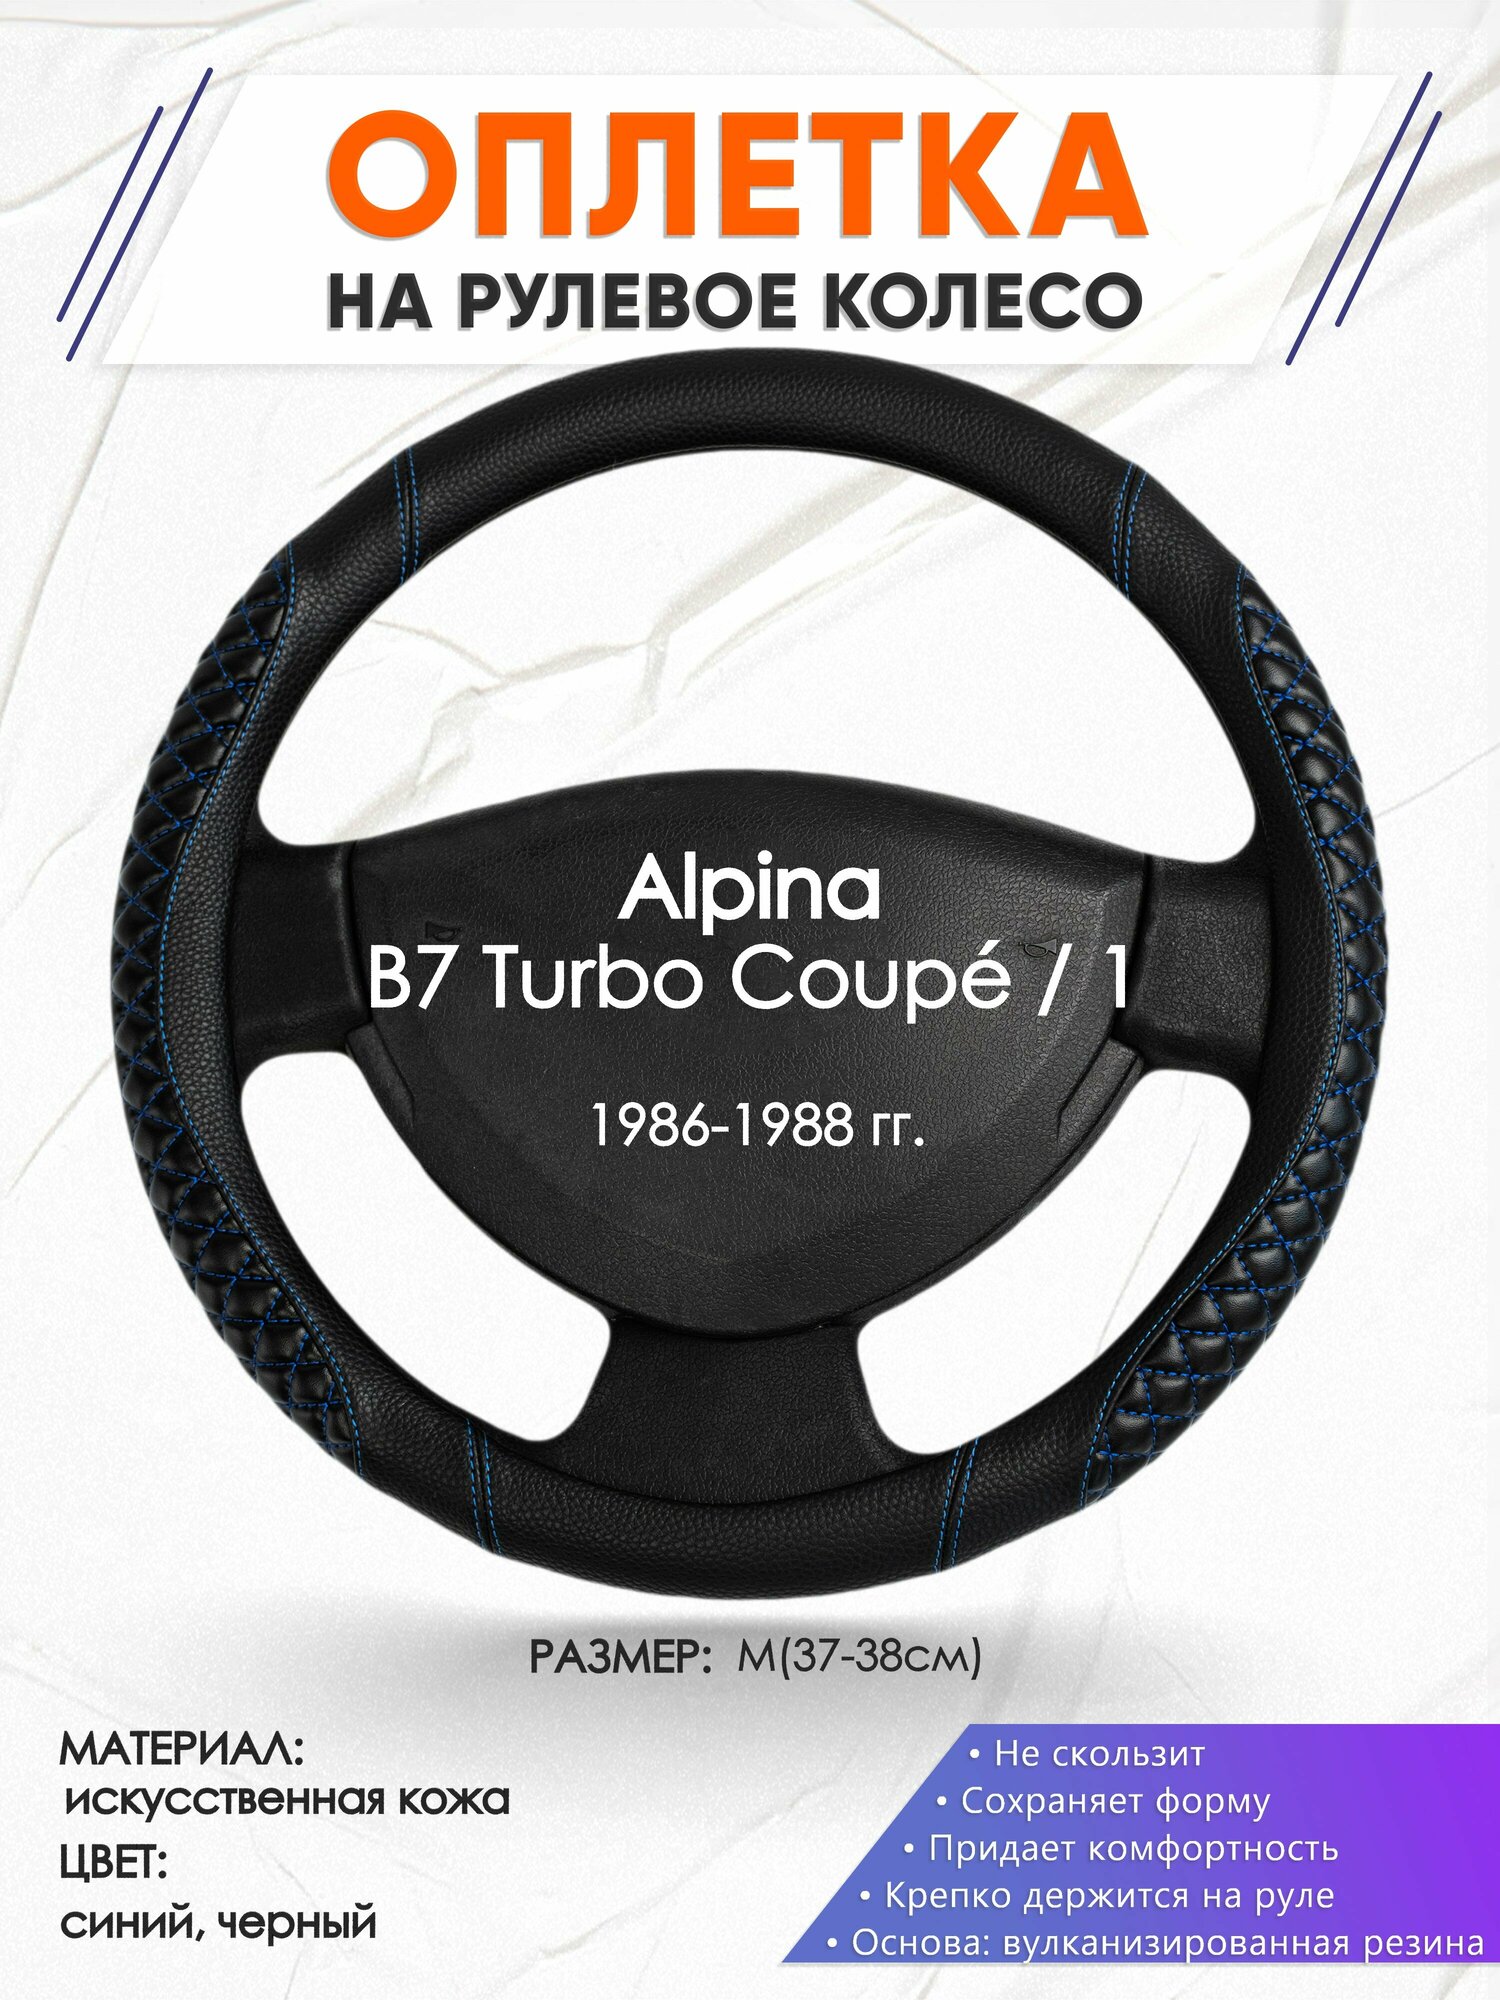 Оплетка наруль для Alpina B7 Turbo Coupé / 1(Альпина Б7 Турбо купе) 1986-1988 годов выпуска, размер M(37-38см), Искусственная кожа 12